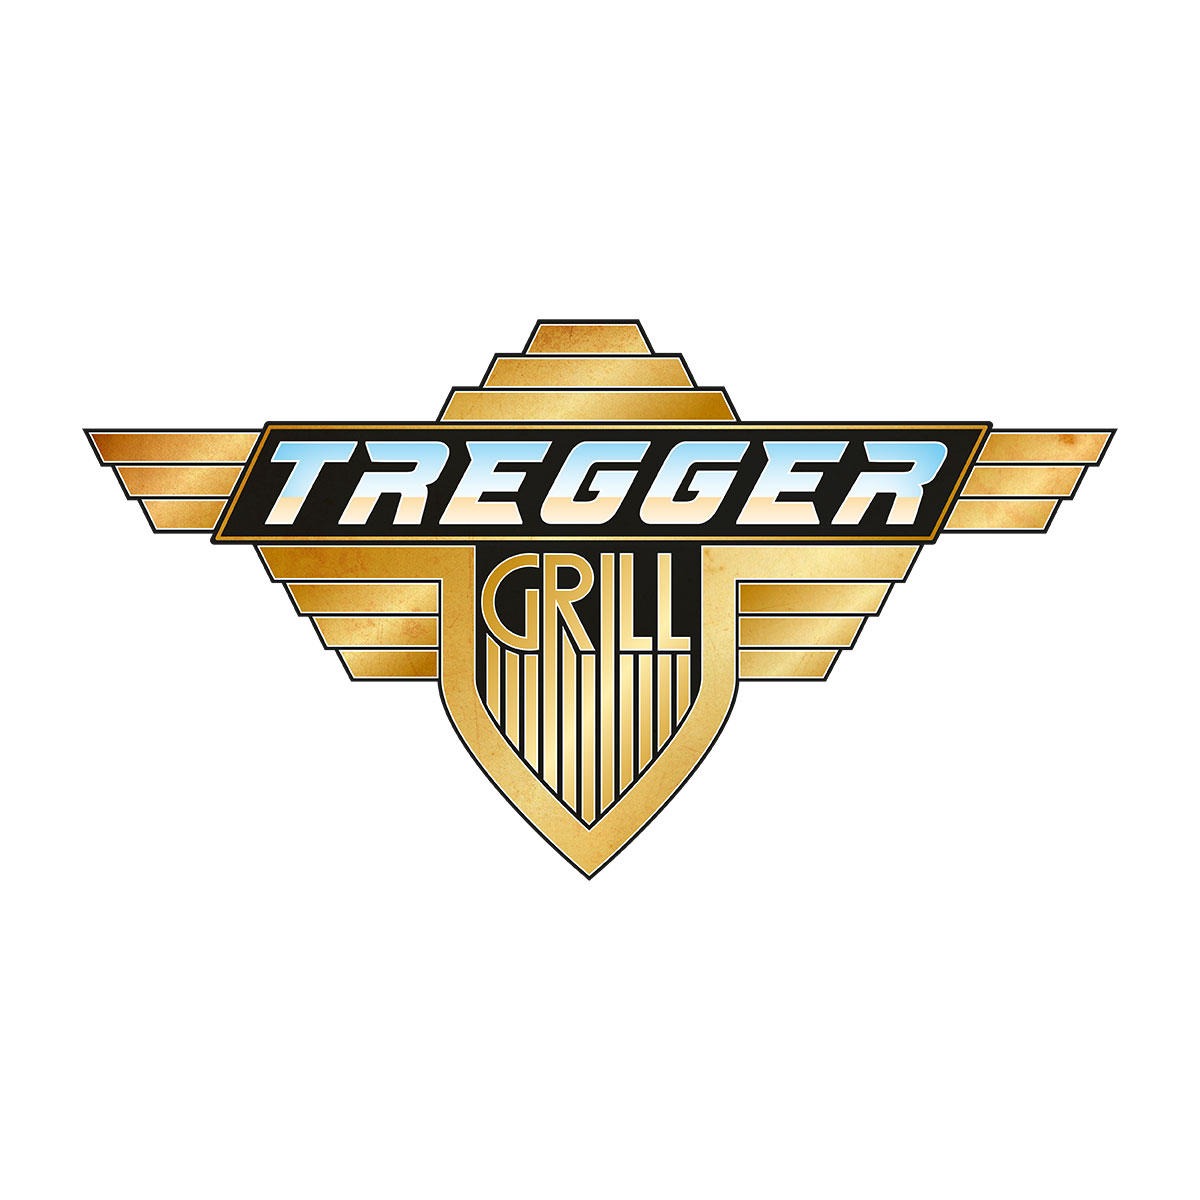 Logo Karls - Tregger-Grill